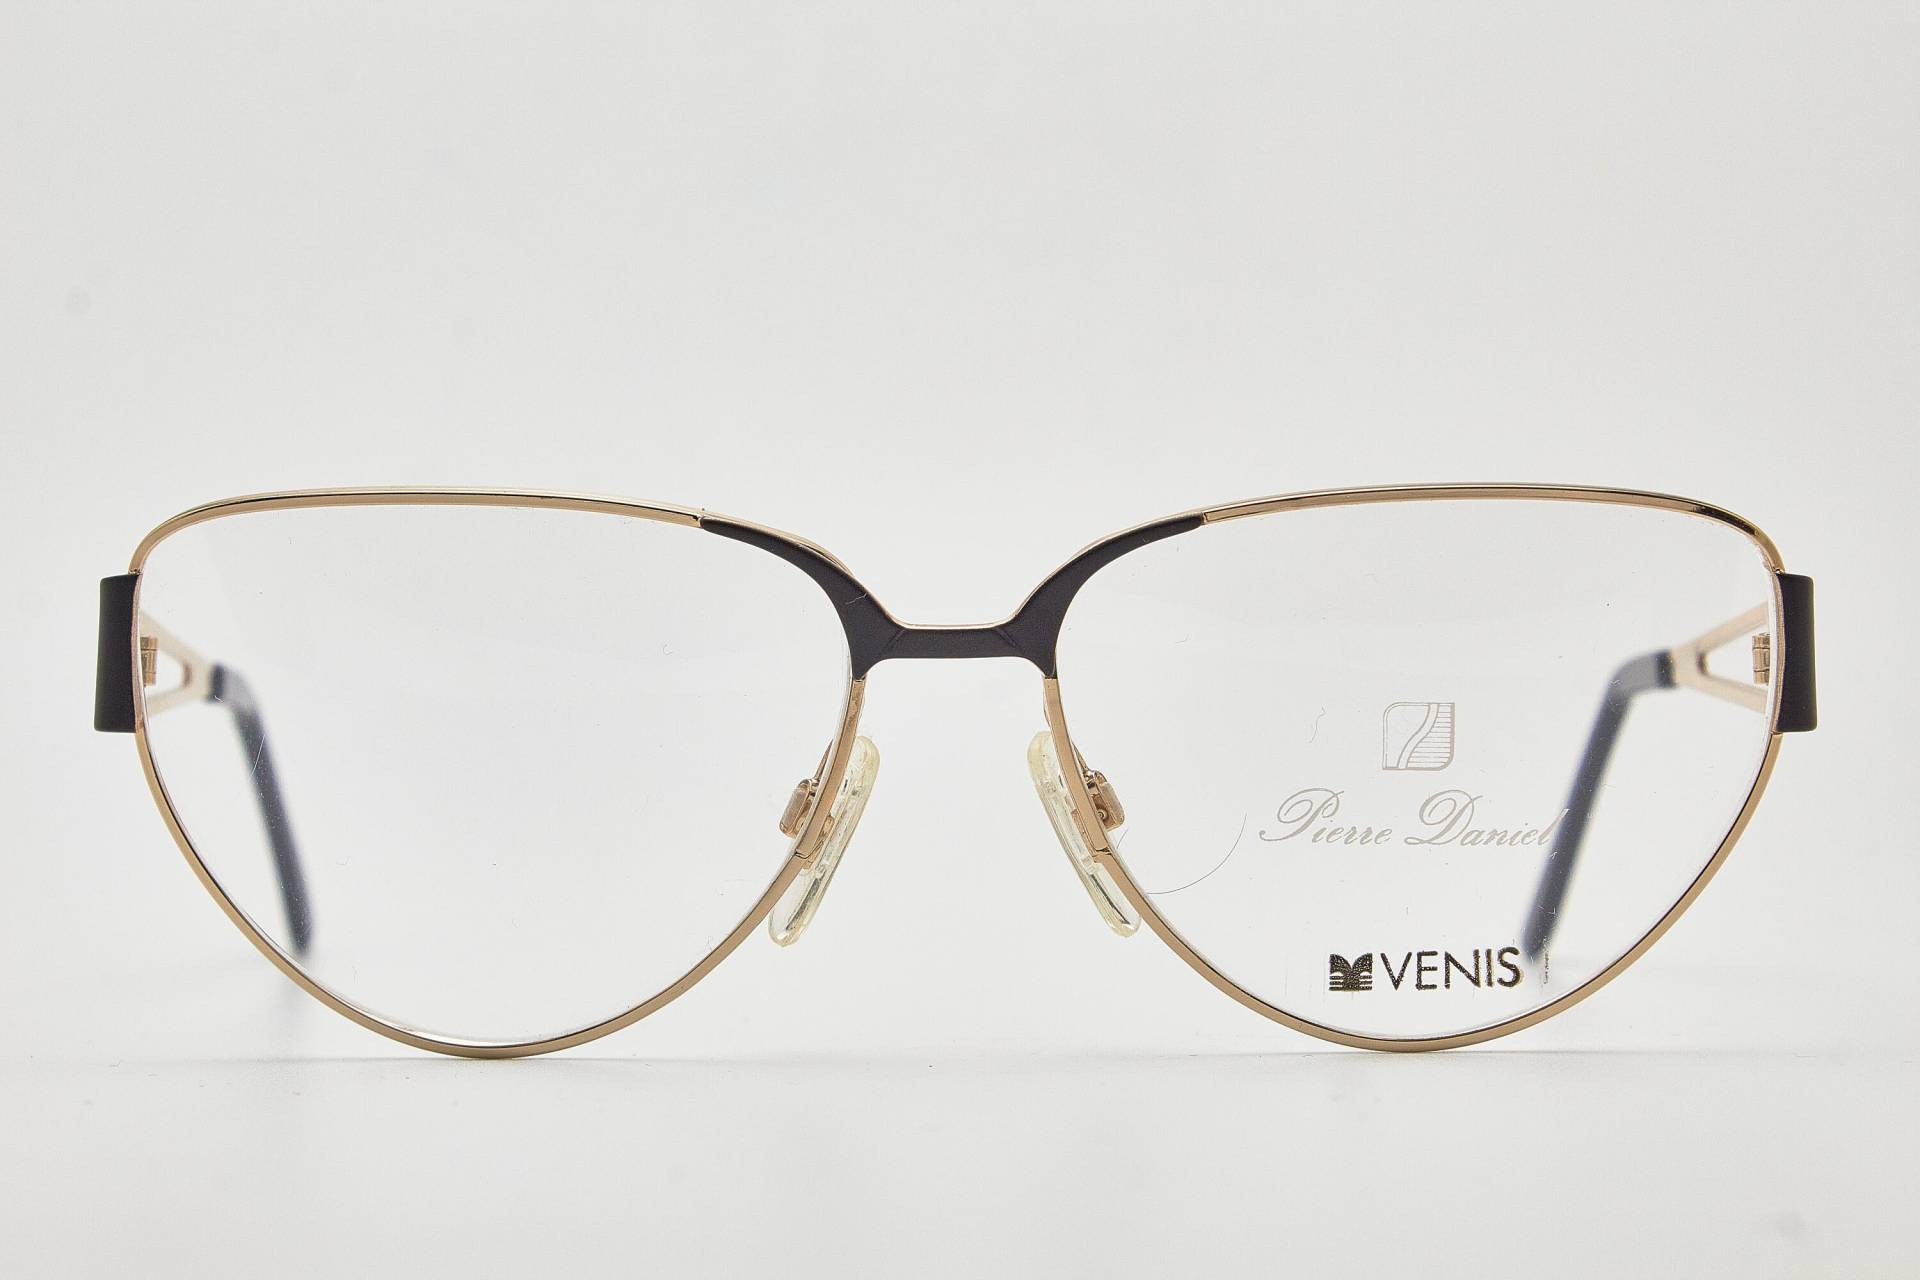 80Er Vintage Frau Steampunk Brillen Pierre Daniel Venis 4252 Schwarz/Poliert Gold Metall Hipster Rahmen Schmetterling Sonnenbrille von VintageGlassesVault